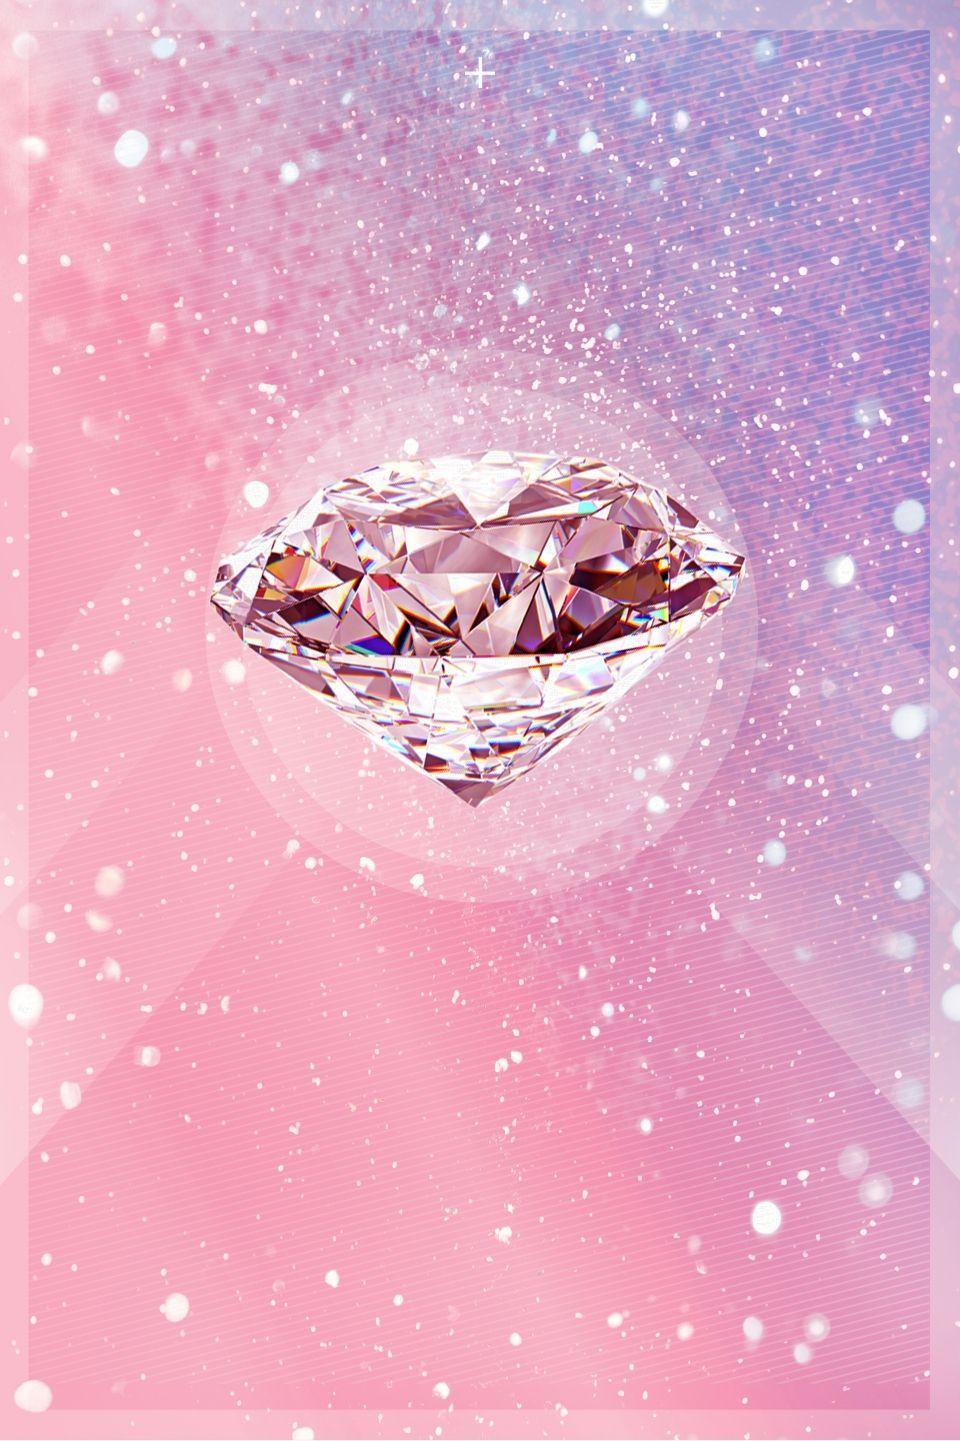 Hãy khám phá những hình nền kim cương hồng lộng lẫy, đầy sáng tạo giúp tôn vinh nét thanh lịch, quý phái. Bạn sẽ bị mê hoặc bởi chúng và muốn sử dụng ngay cho điện thoại hoặc máy tính của mình.